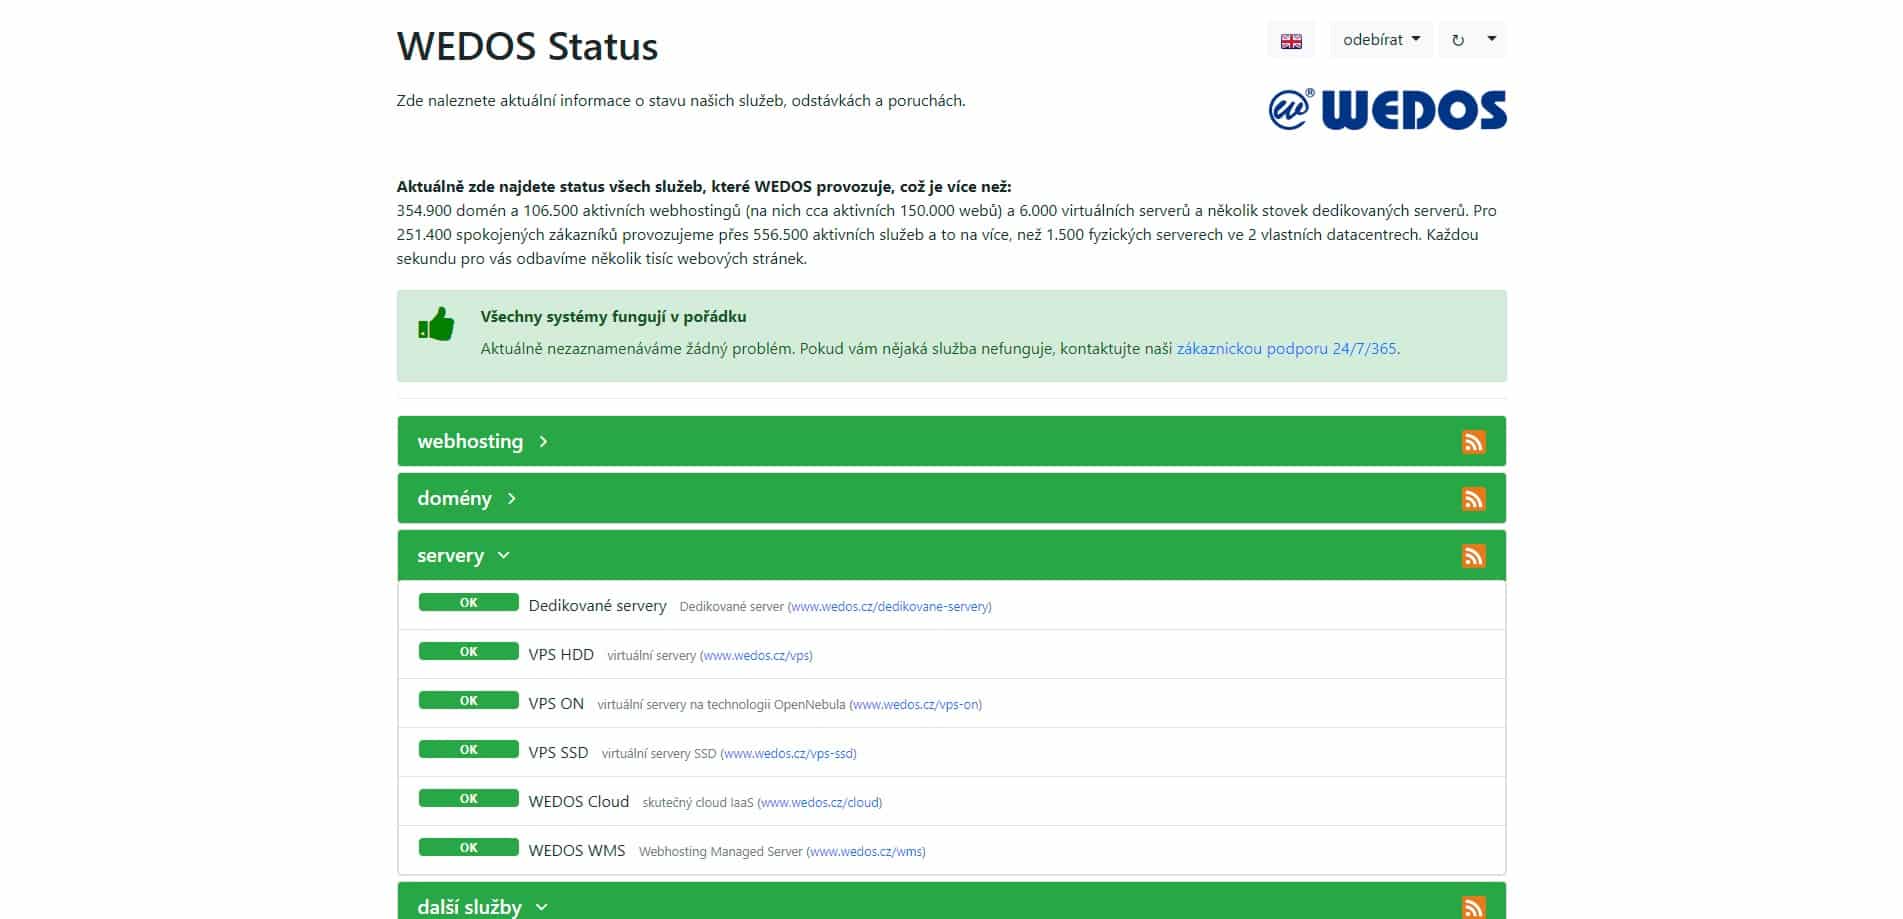 Snímek ze stránek služby WEDOS status. Vypadá to, že všechny služby běží.